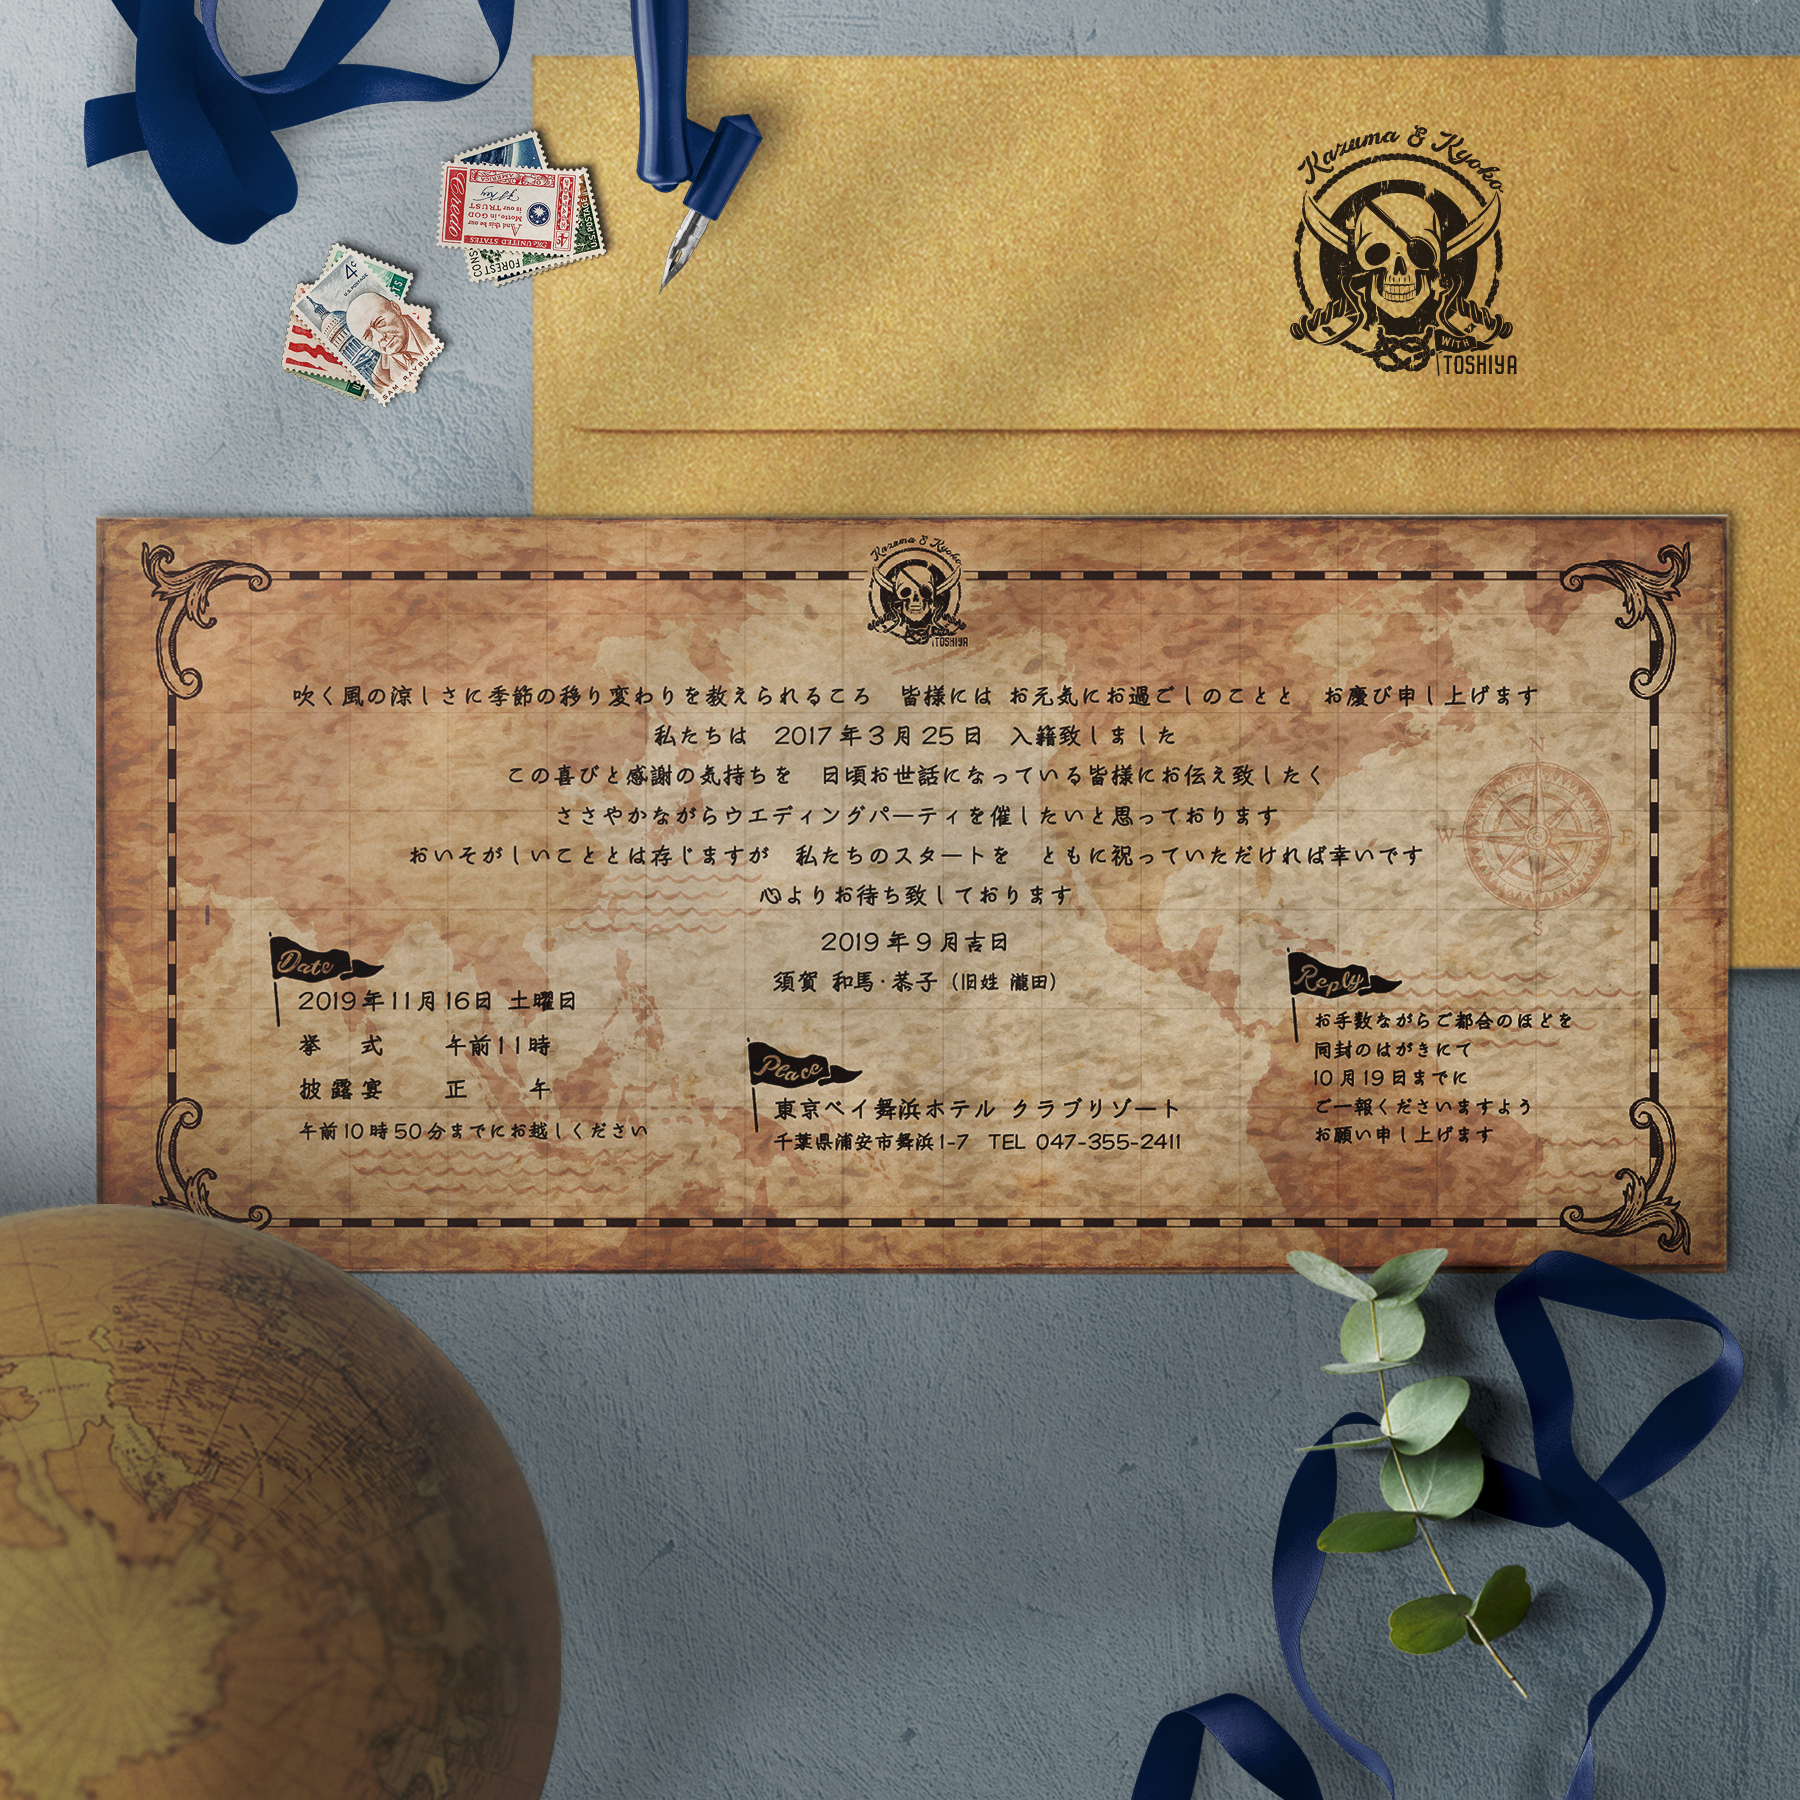 海賊をイメージした細長カードタイプ招待状